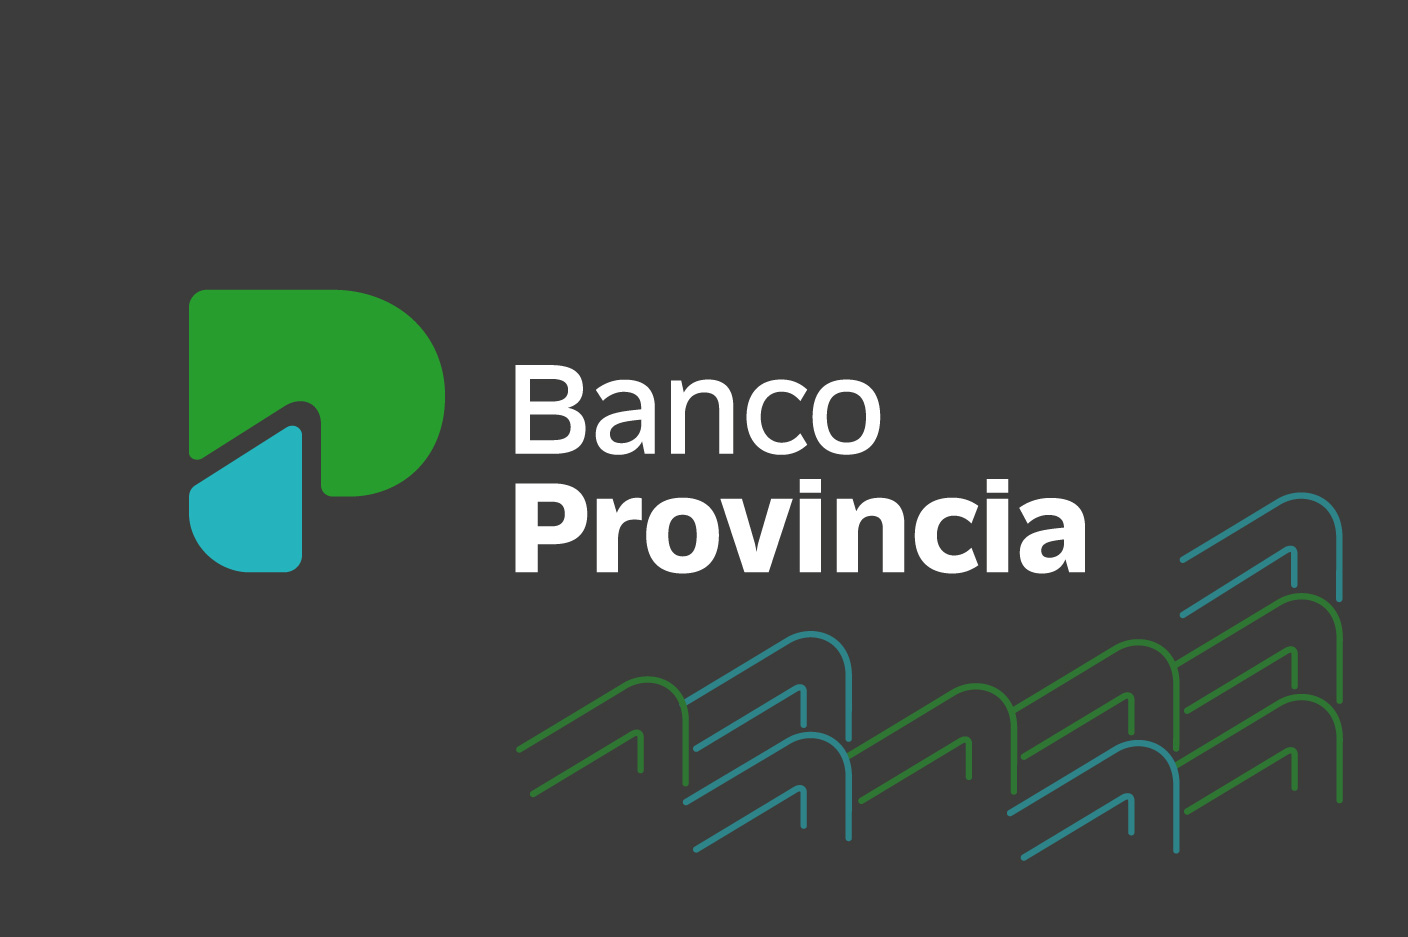 www.bancoprovincia.com.ar